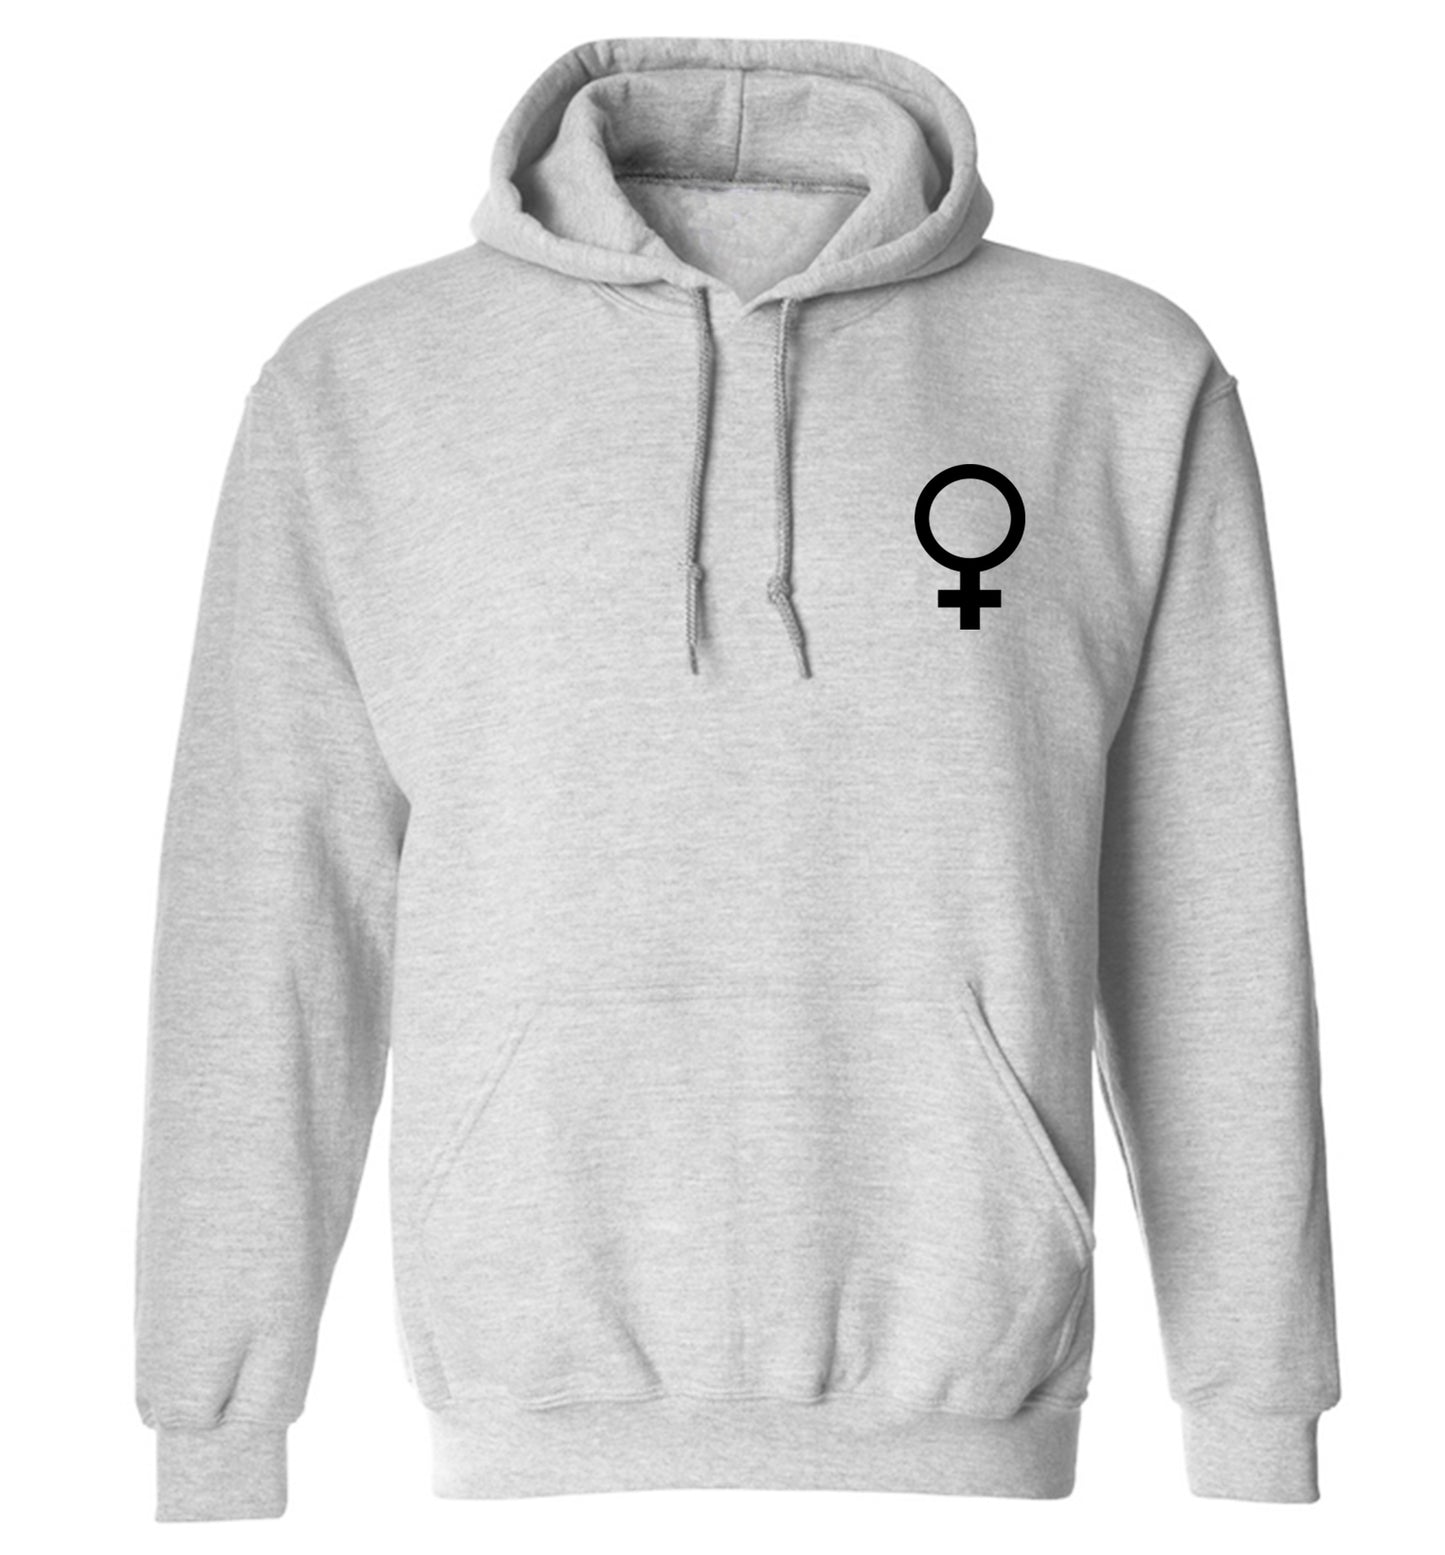 Female pocket symbol adults unisex grey hoodie 2XL